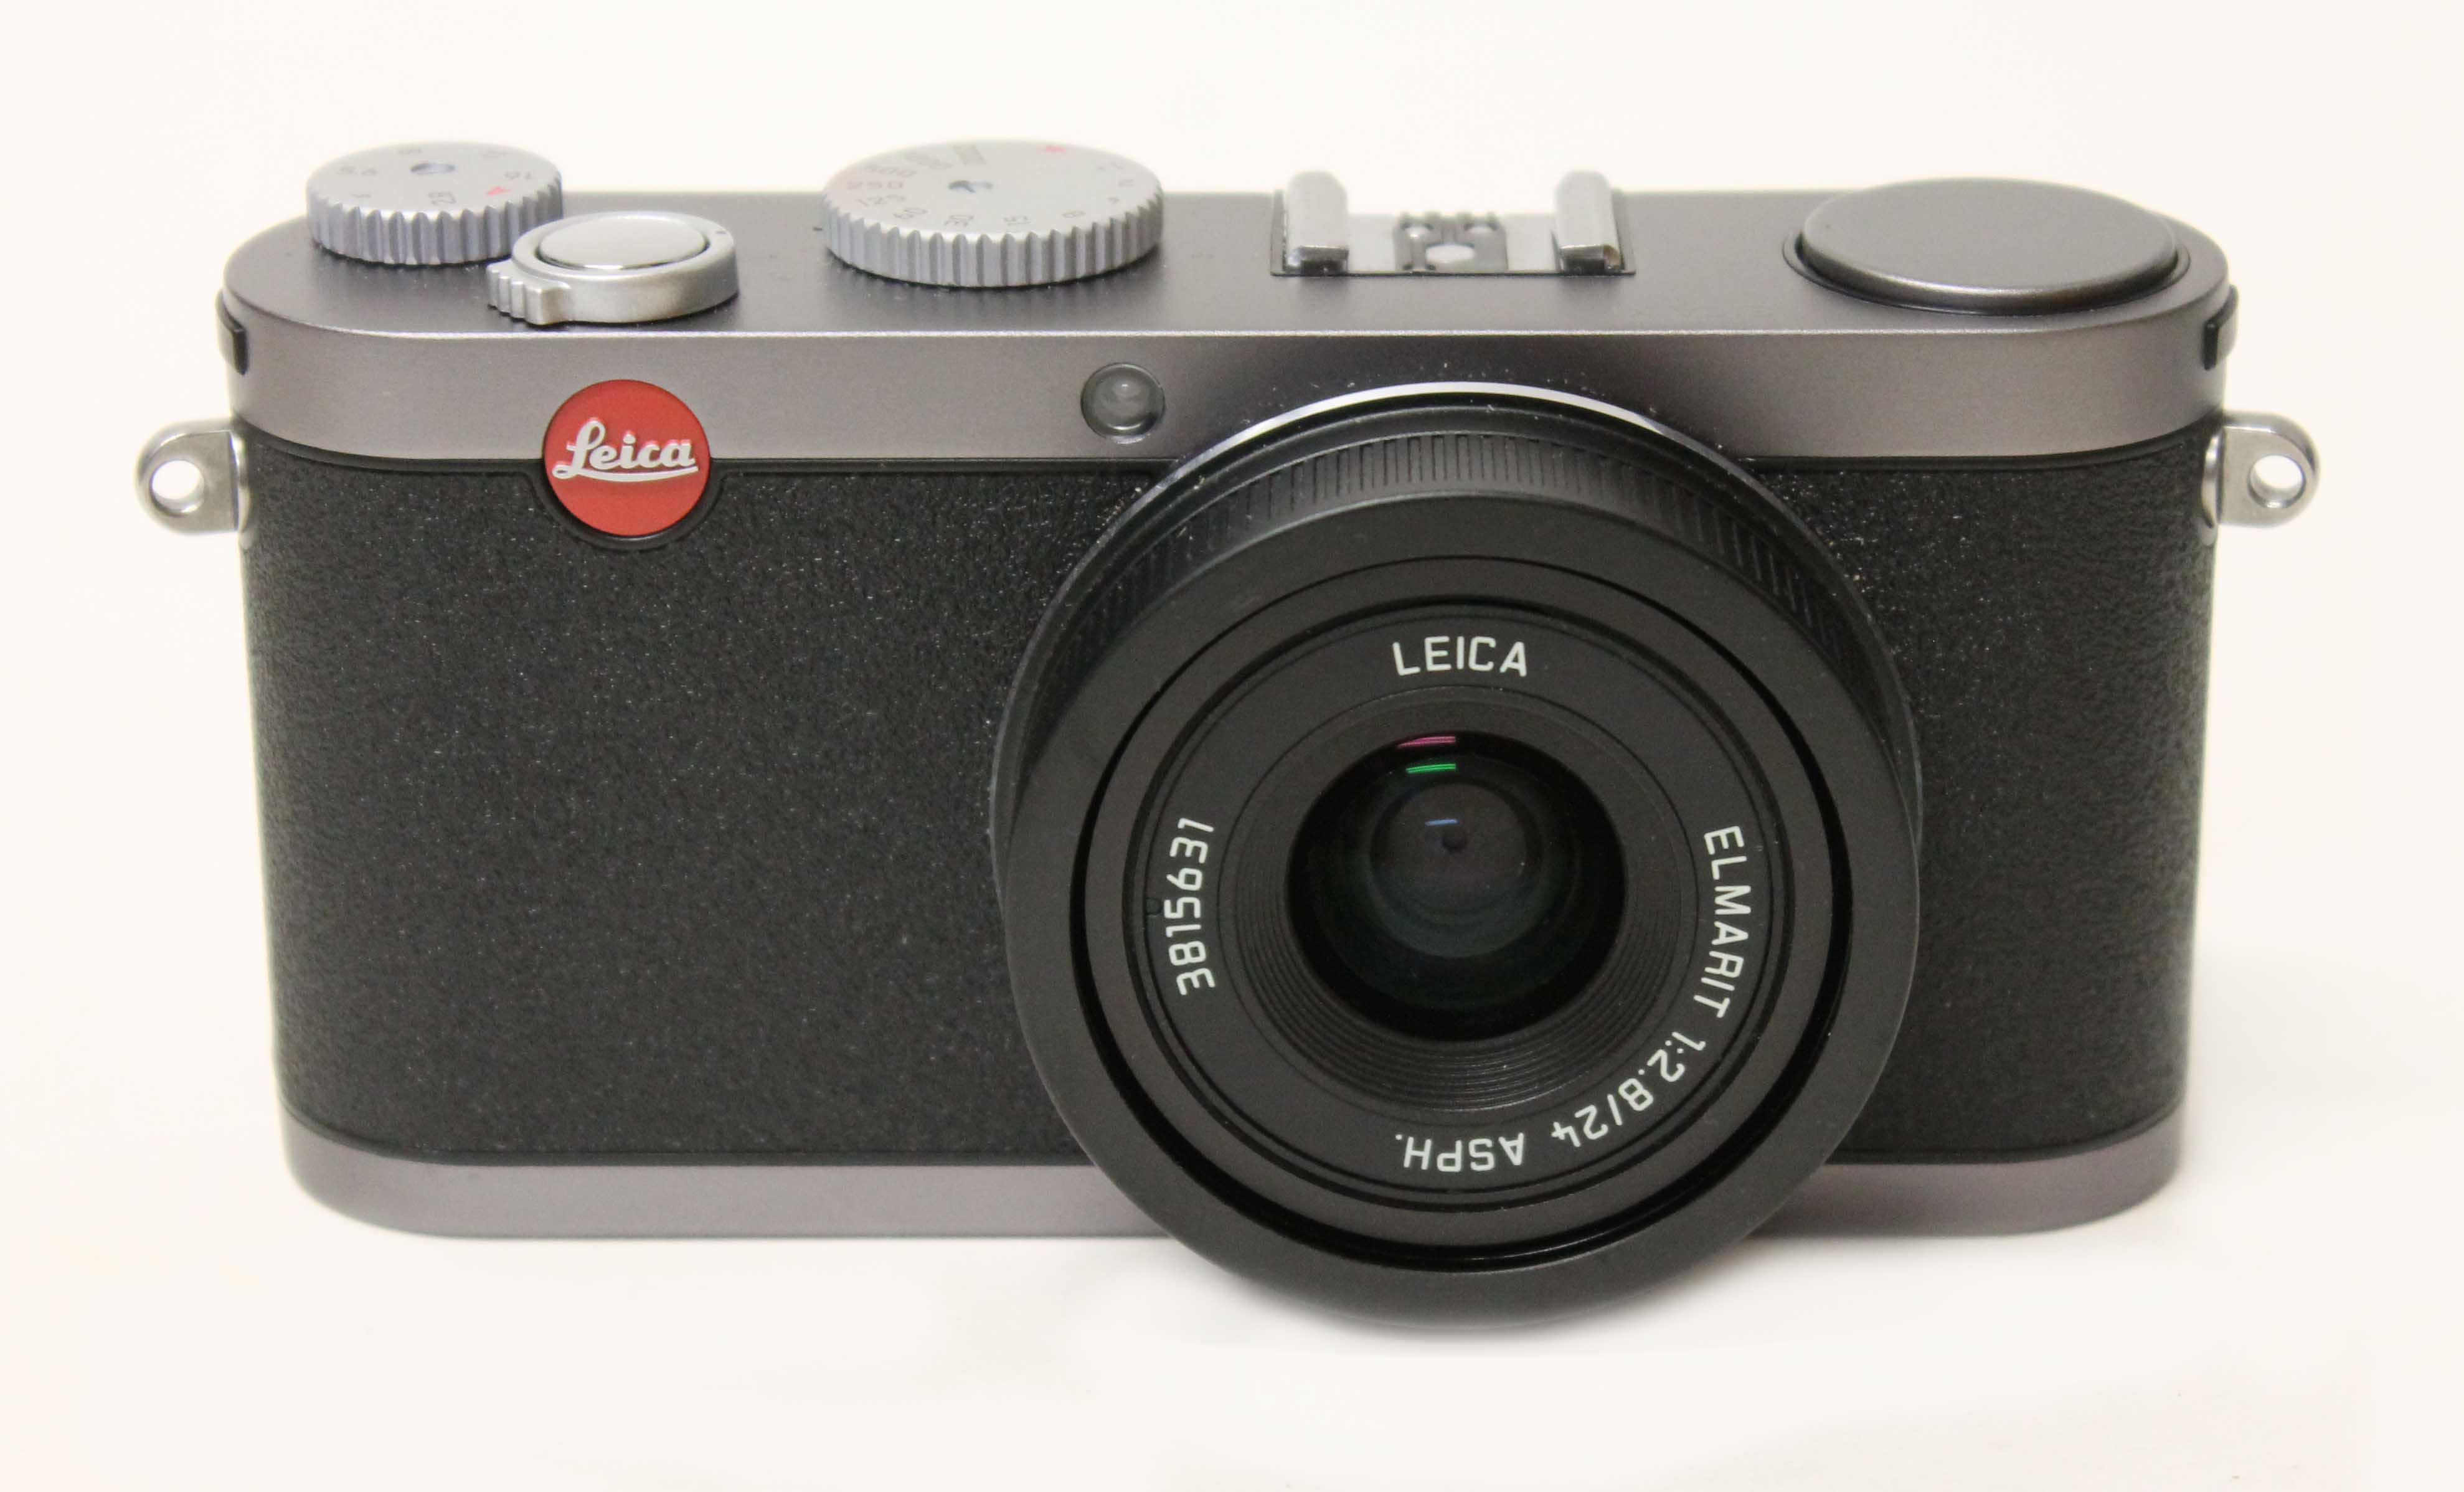 A Leica X1 digital camera, steel grey, with Elmarit 1:2.8/24 ASPH lens, serial no. 3815631,